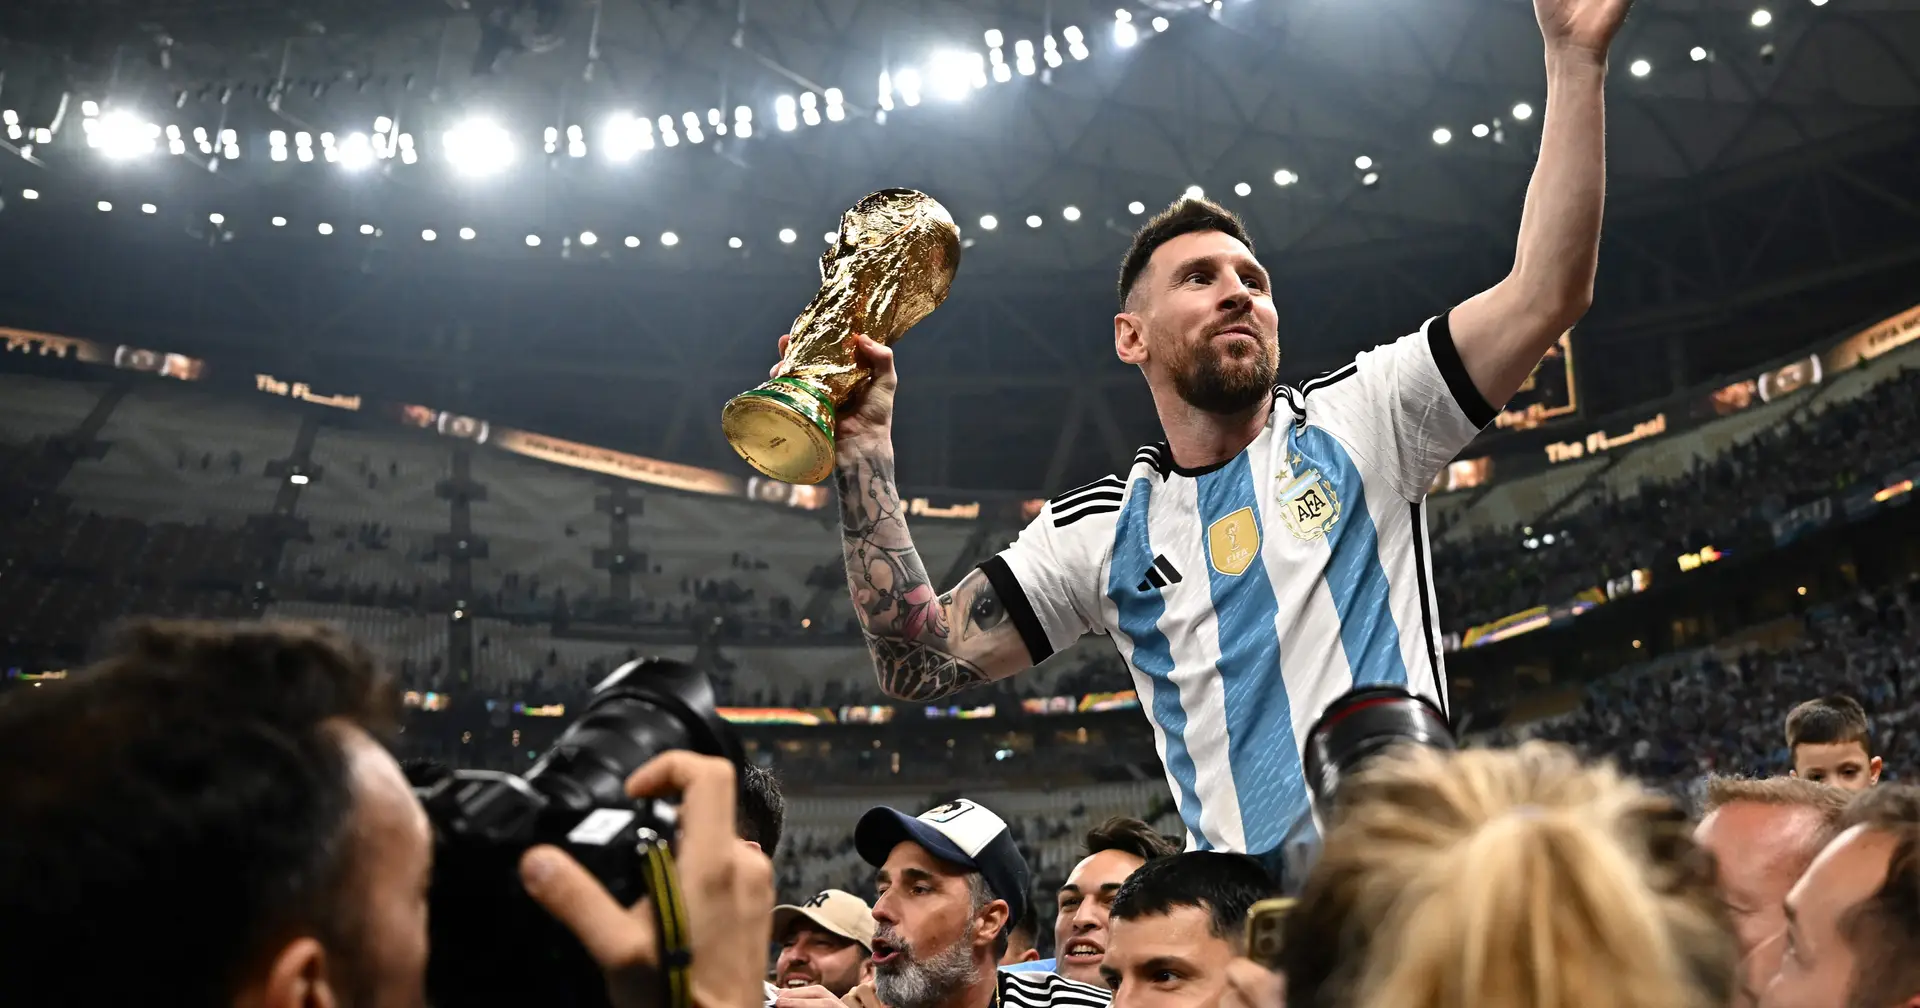 Campeão e melhor jogador, Messi encerra história pessoal nas Copas do Mundo